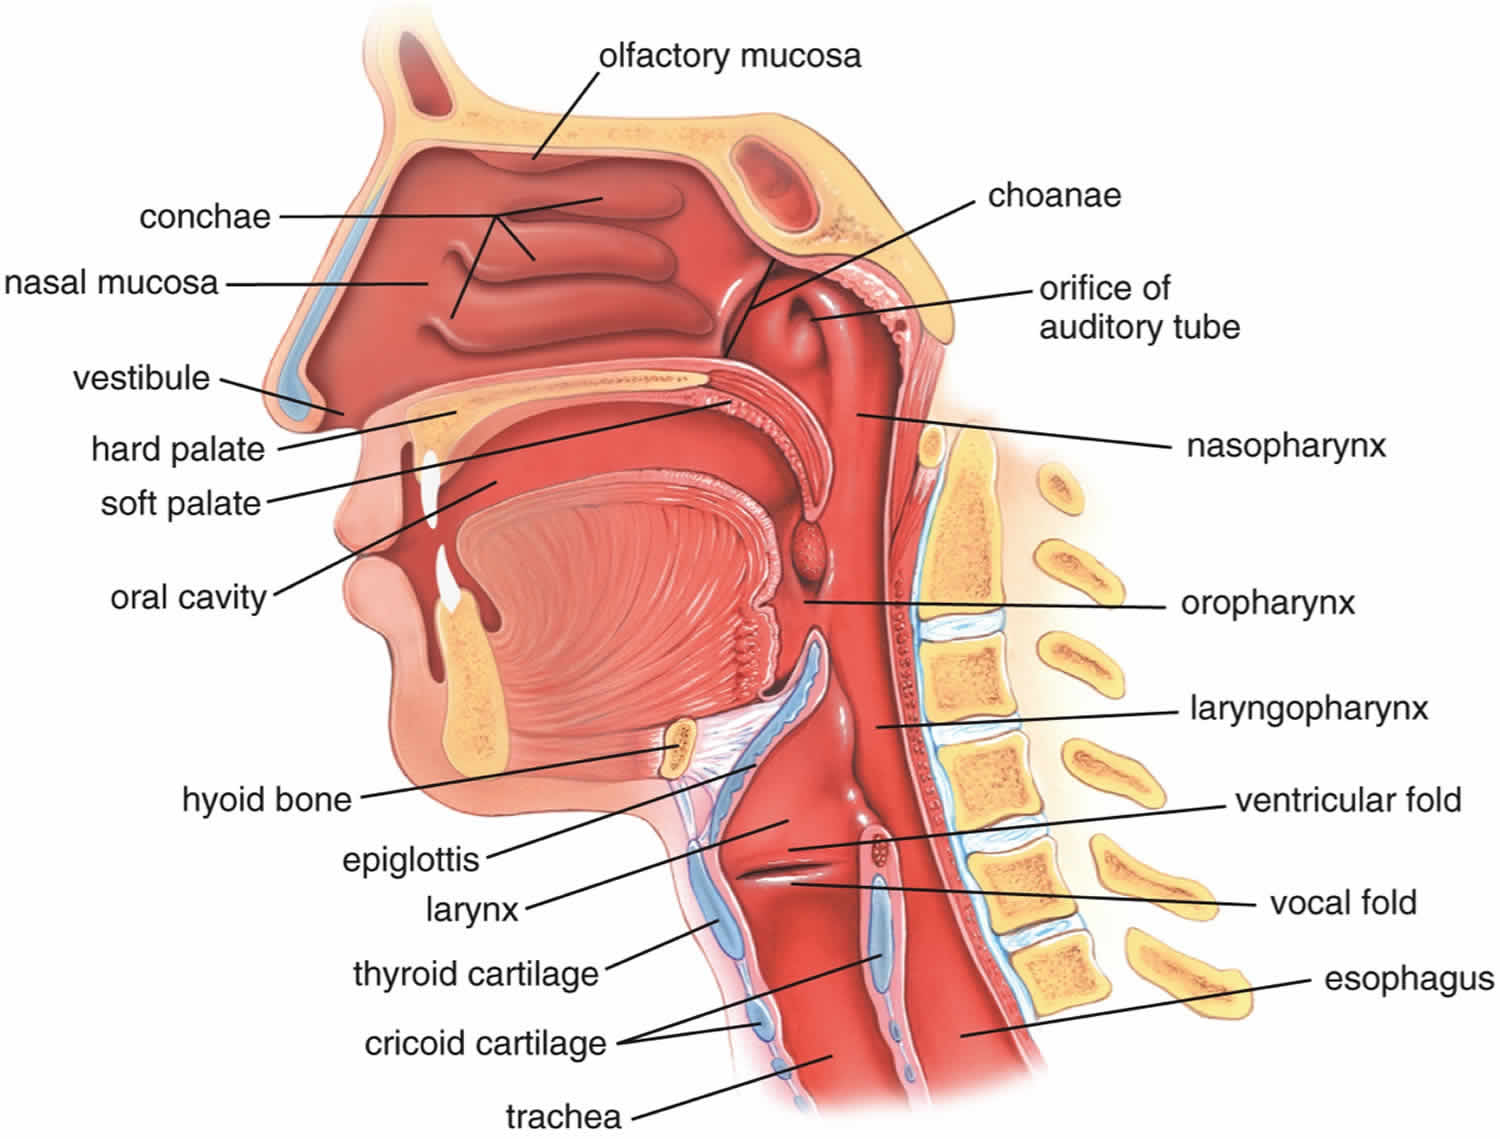 Upper airway anatomy